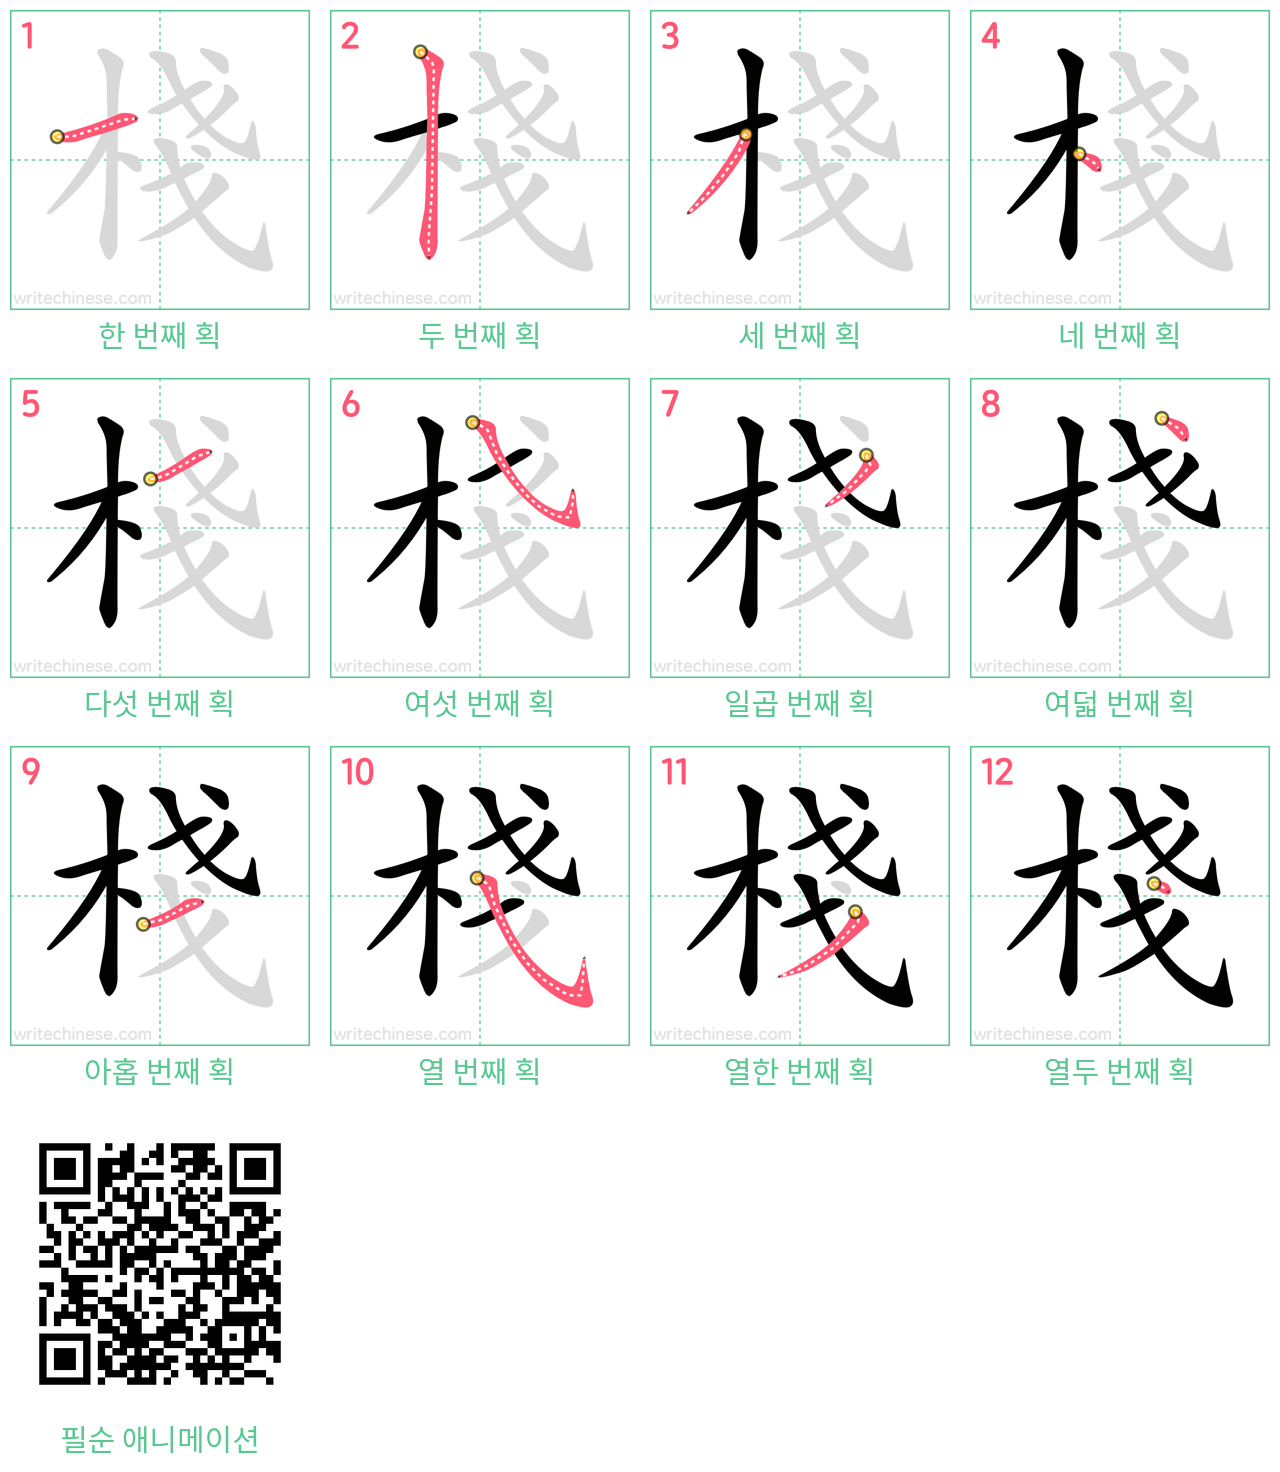 棧 step-by-step stroke order diagrams